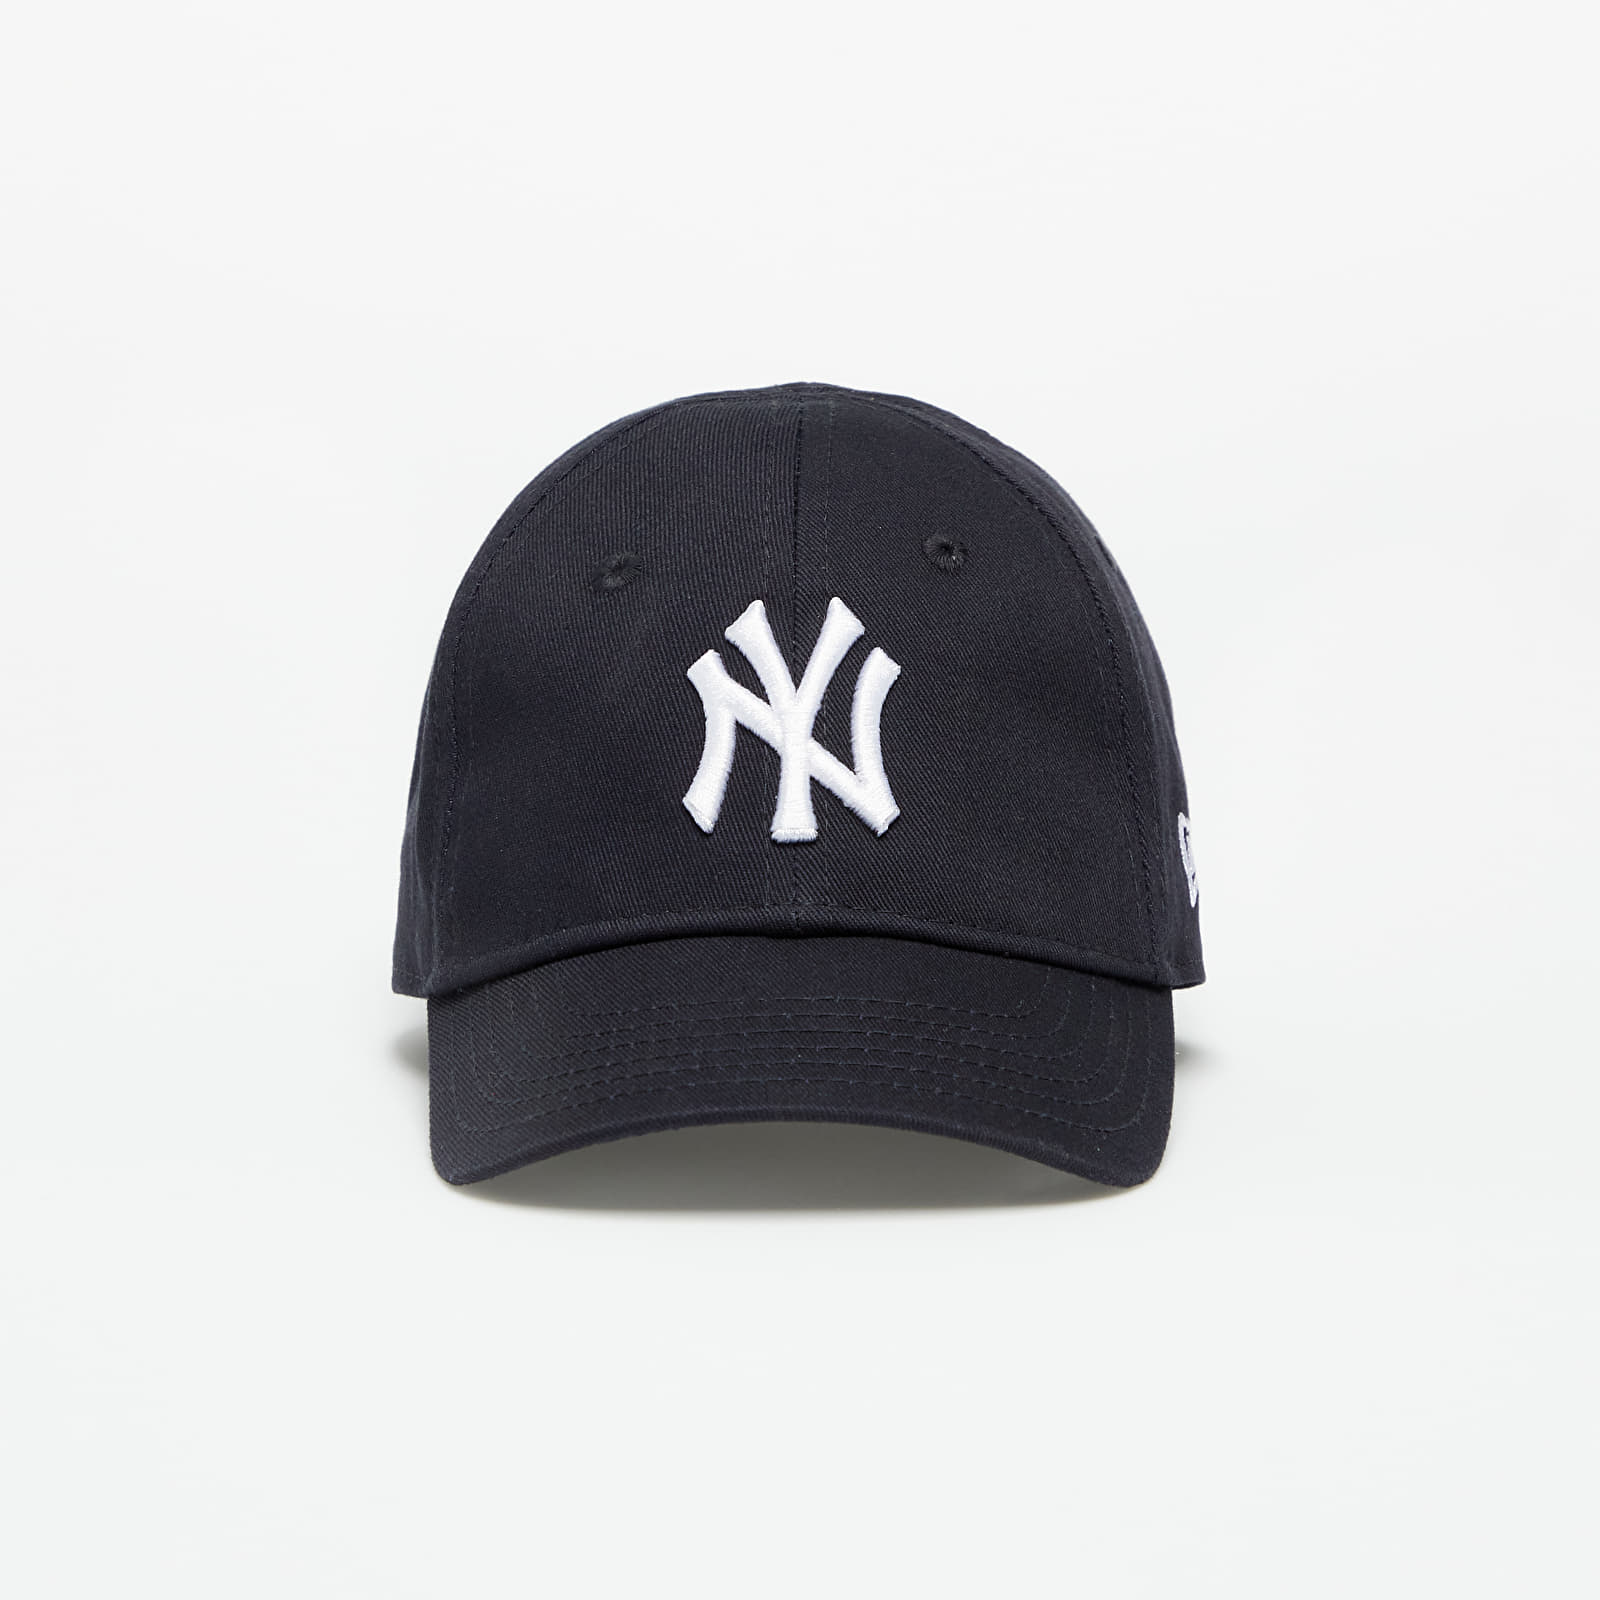 Caps New Era 940 My First New York Yankees Navy/ White